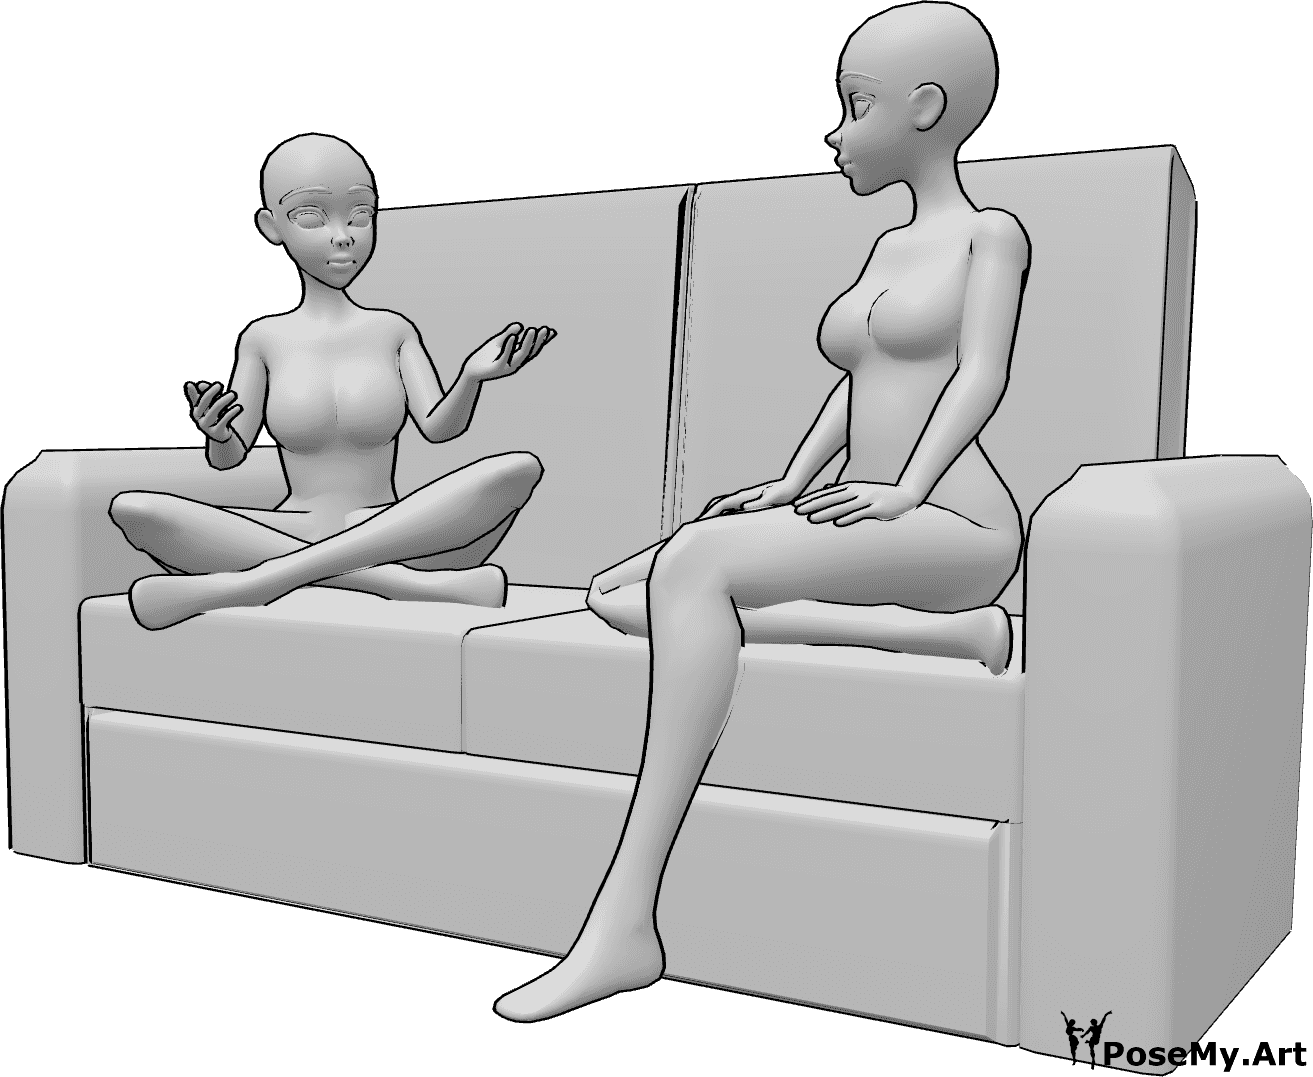 Posen-Referenz- Anime sitzend sprechen Pose - Zwei Anime-Frauen sitzen auf der Couch und unterhalten sich, schauen sich an